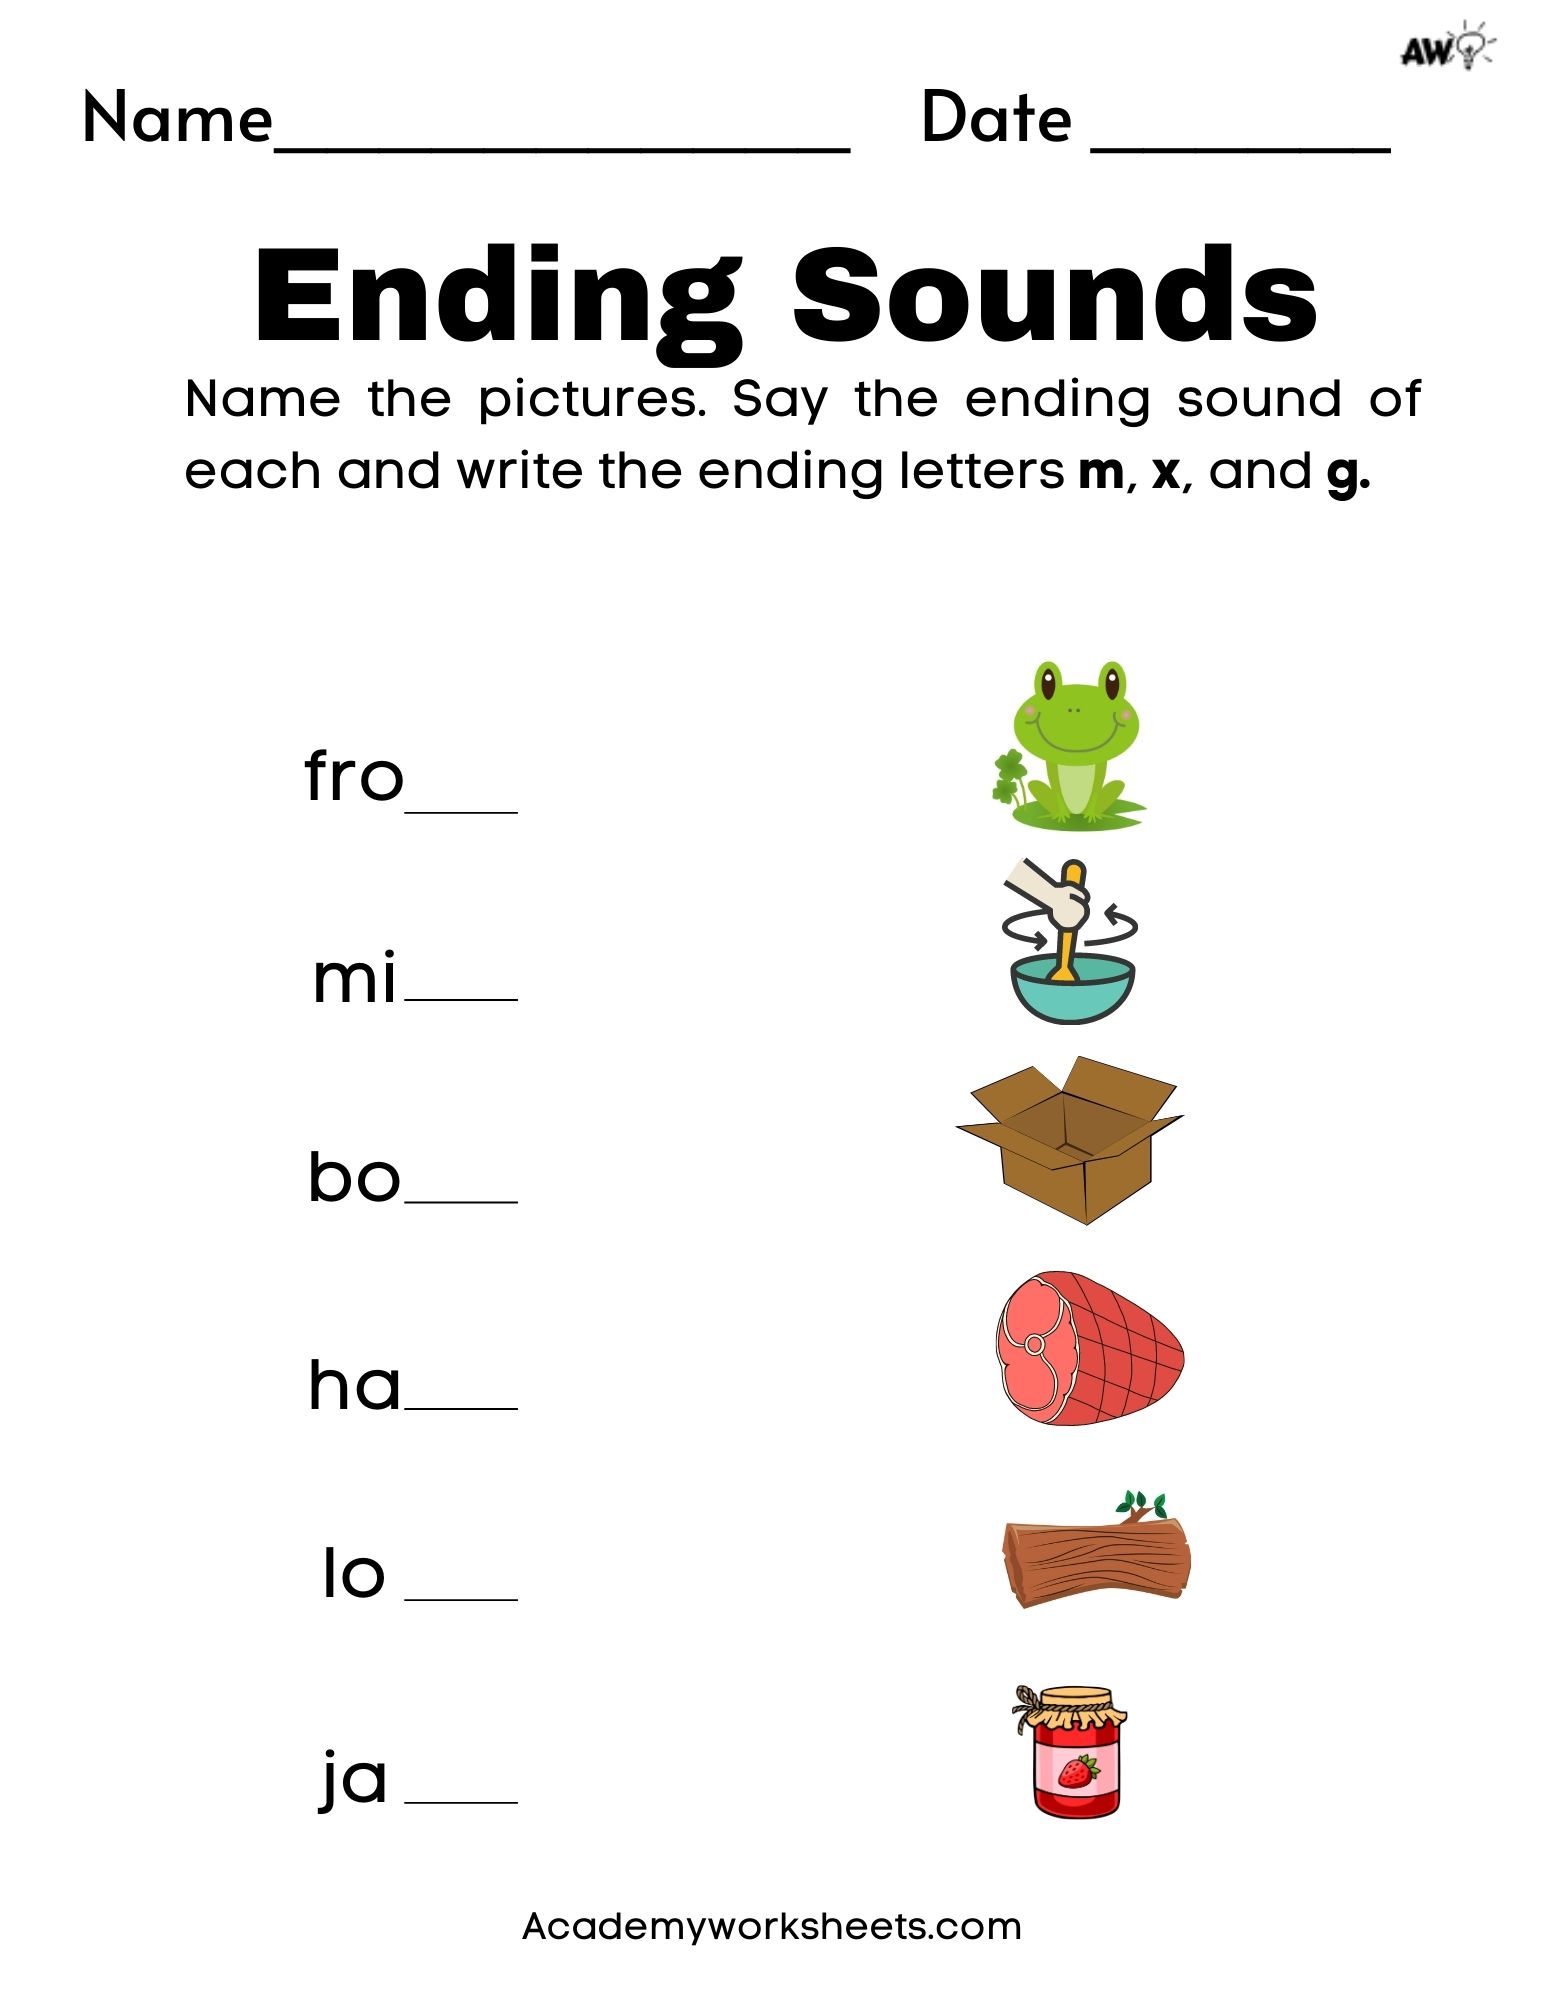 Beginning Sounds CVC Words /p, b ,m, t, d, k, g, f